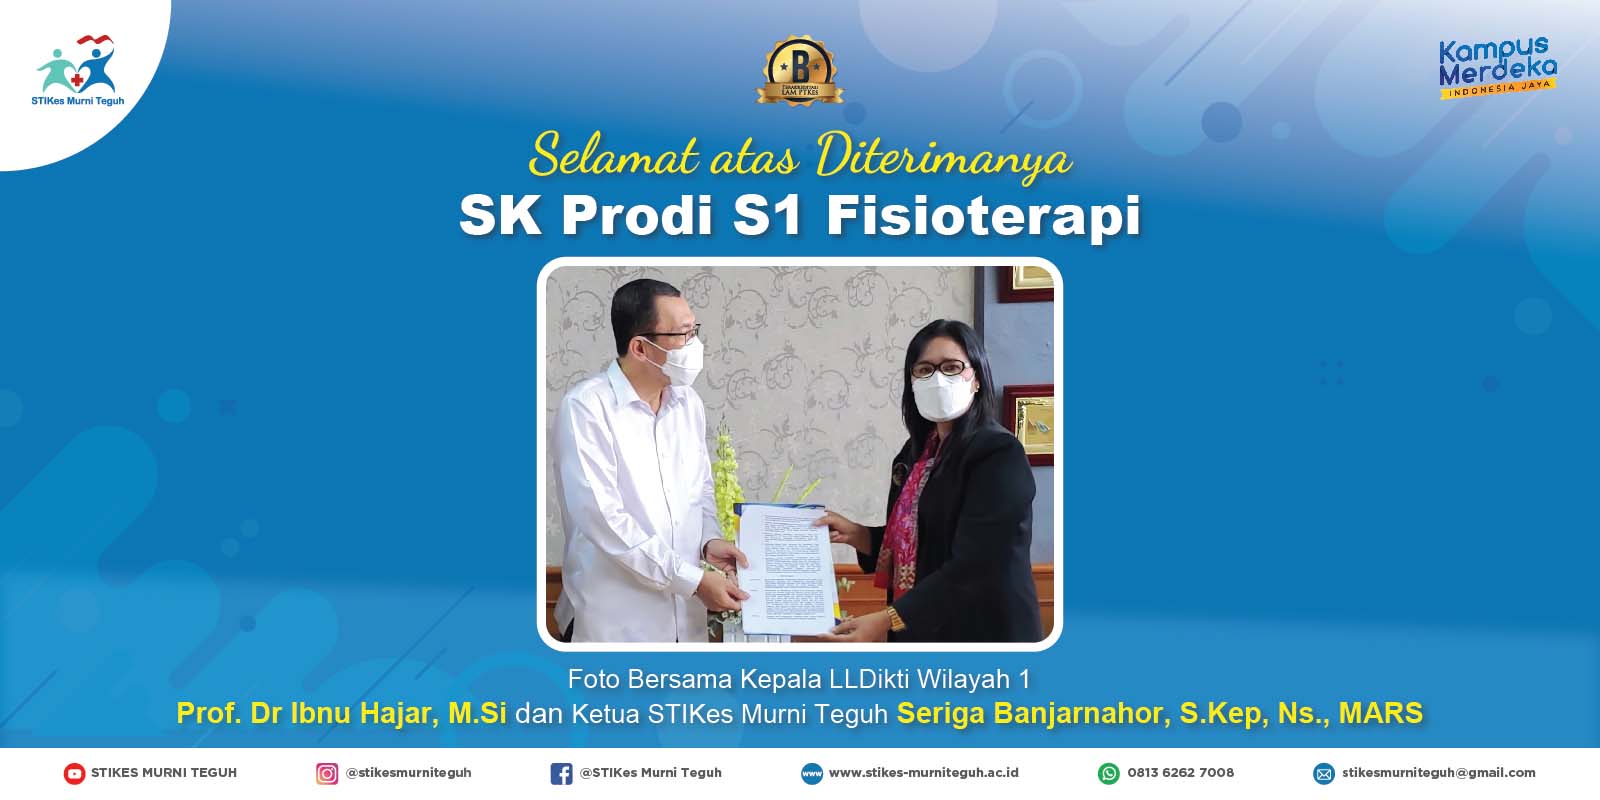 Selamat Atas diterimanya SK Prodi S1 Fisioterapi